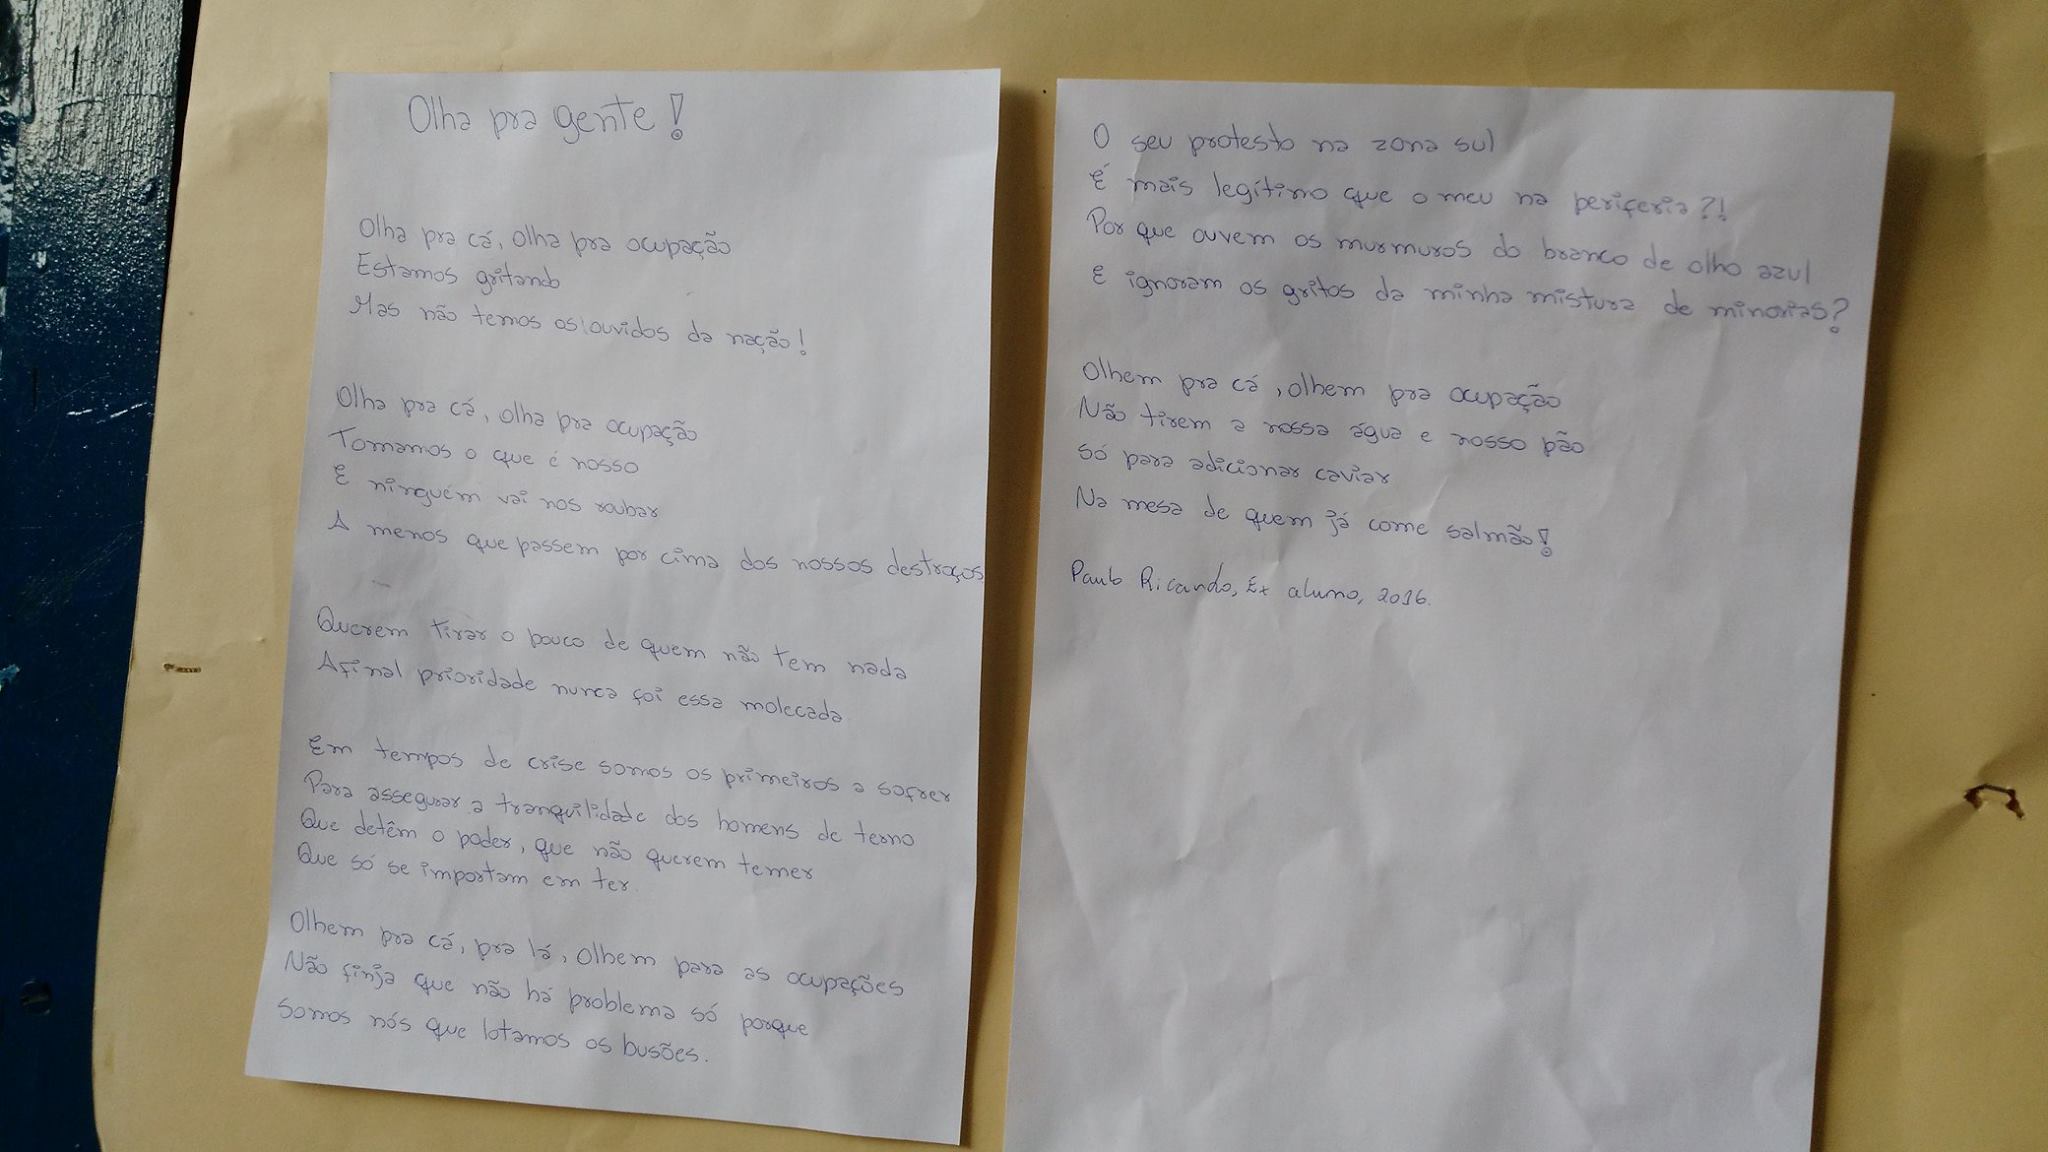 ‘Olha pra cá, olha pra ocupação’ — poema de ex-aluno do colégio Bangu